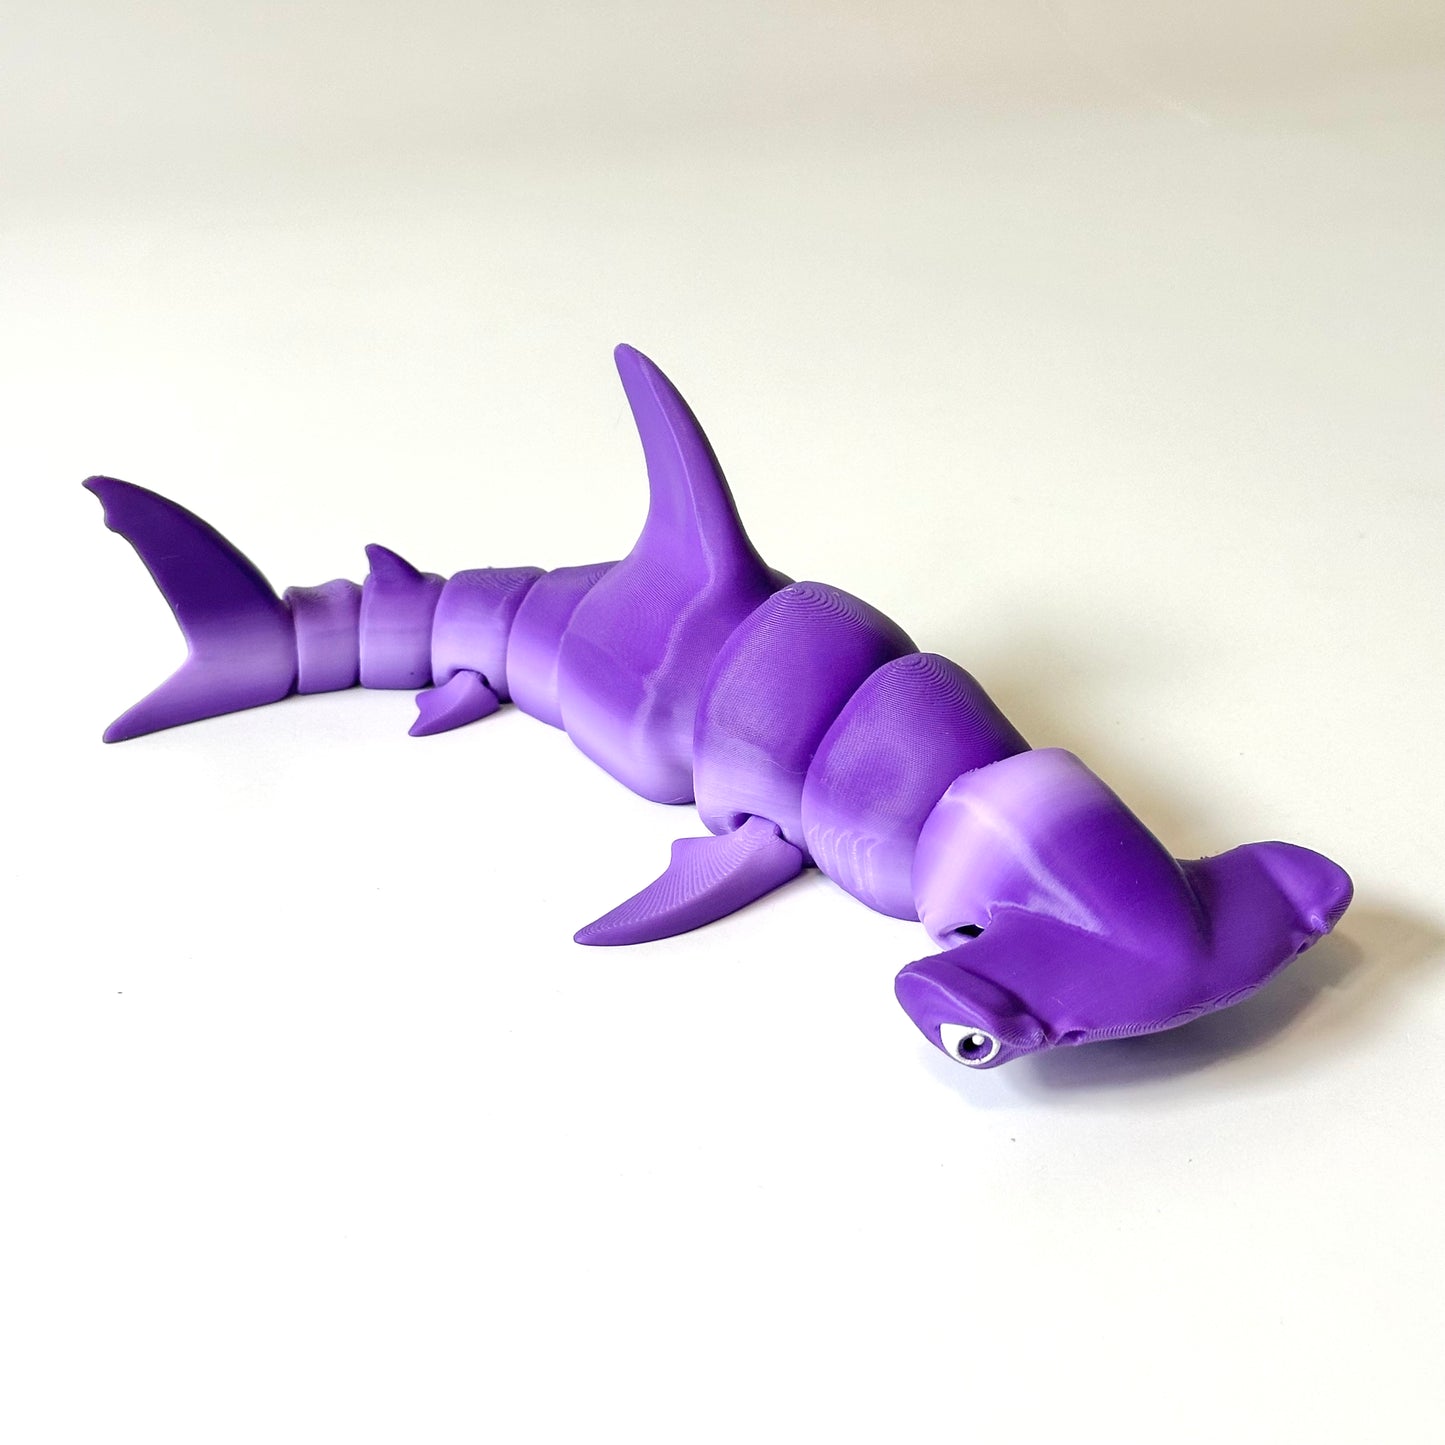 Hammerhead Shark - 3D Printed Articulating Figure